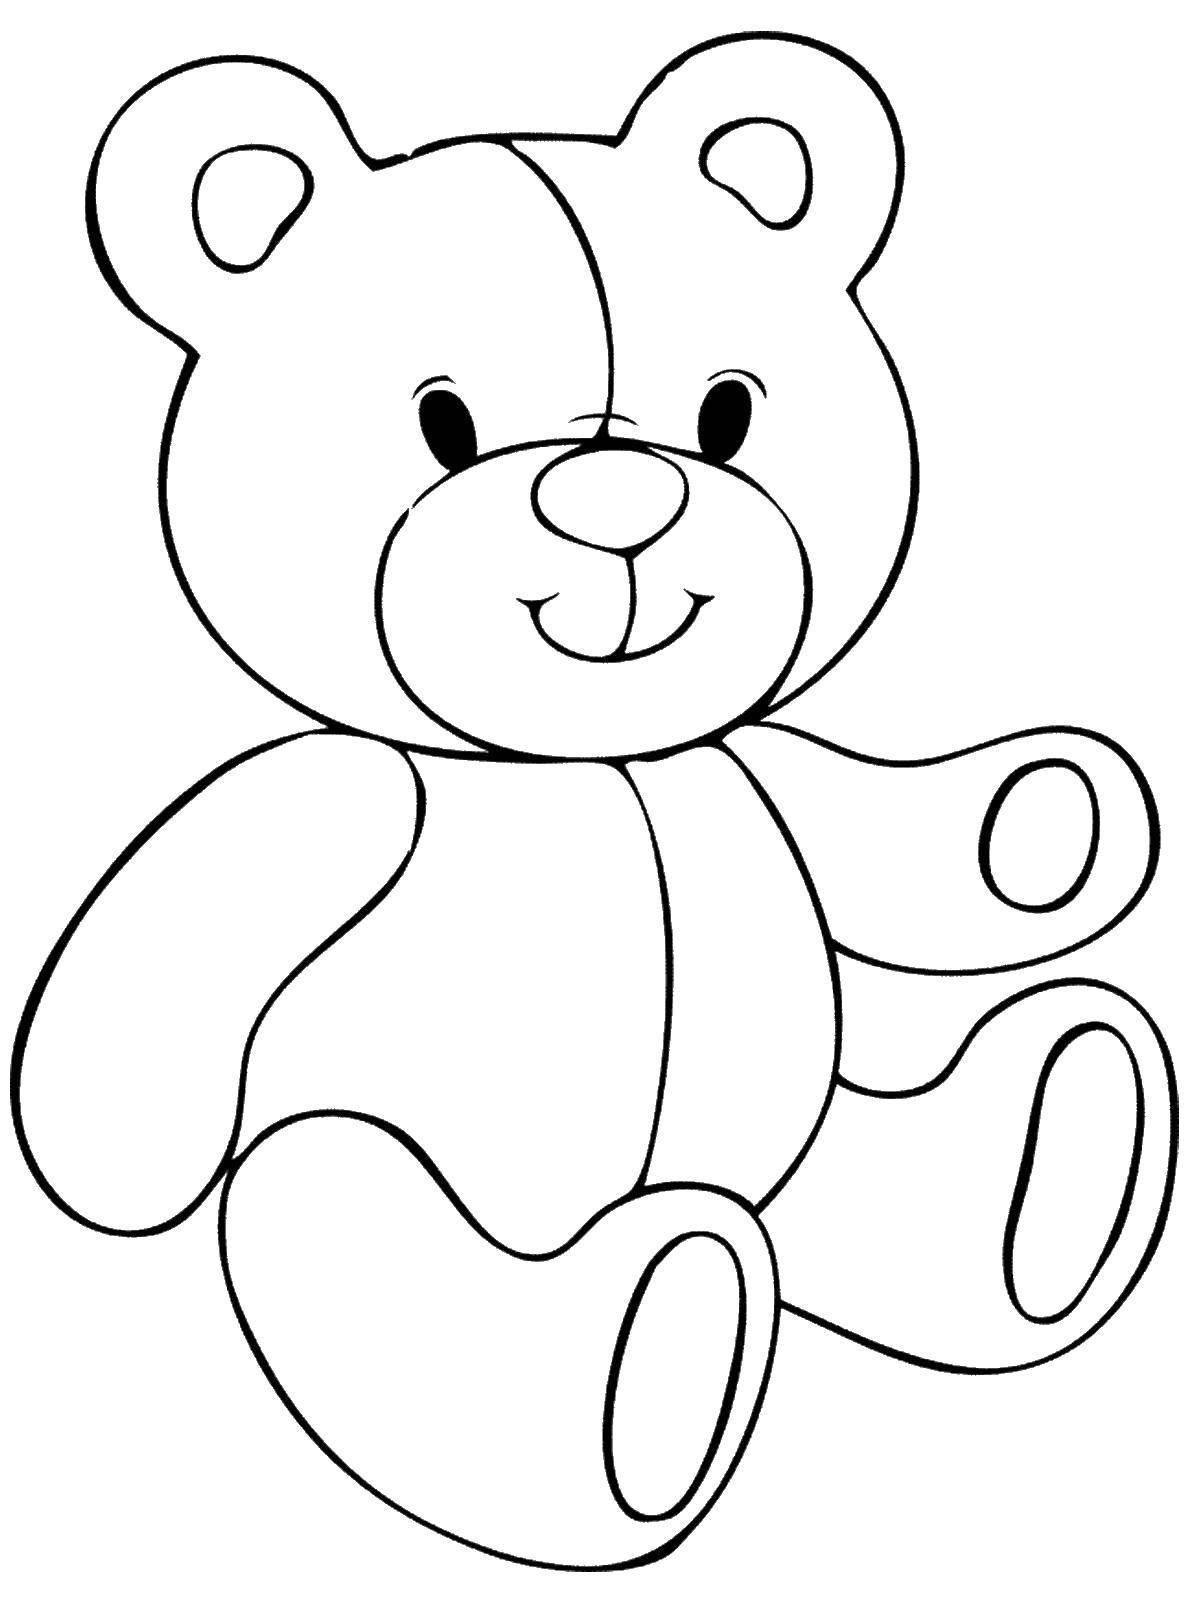 Картинки для раскрашивания для детей. Раскраска. Медвежонок. Раскраска "мишки". Мишка раскраска для малышей. Раскраска. Игрушки.